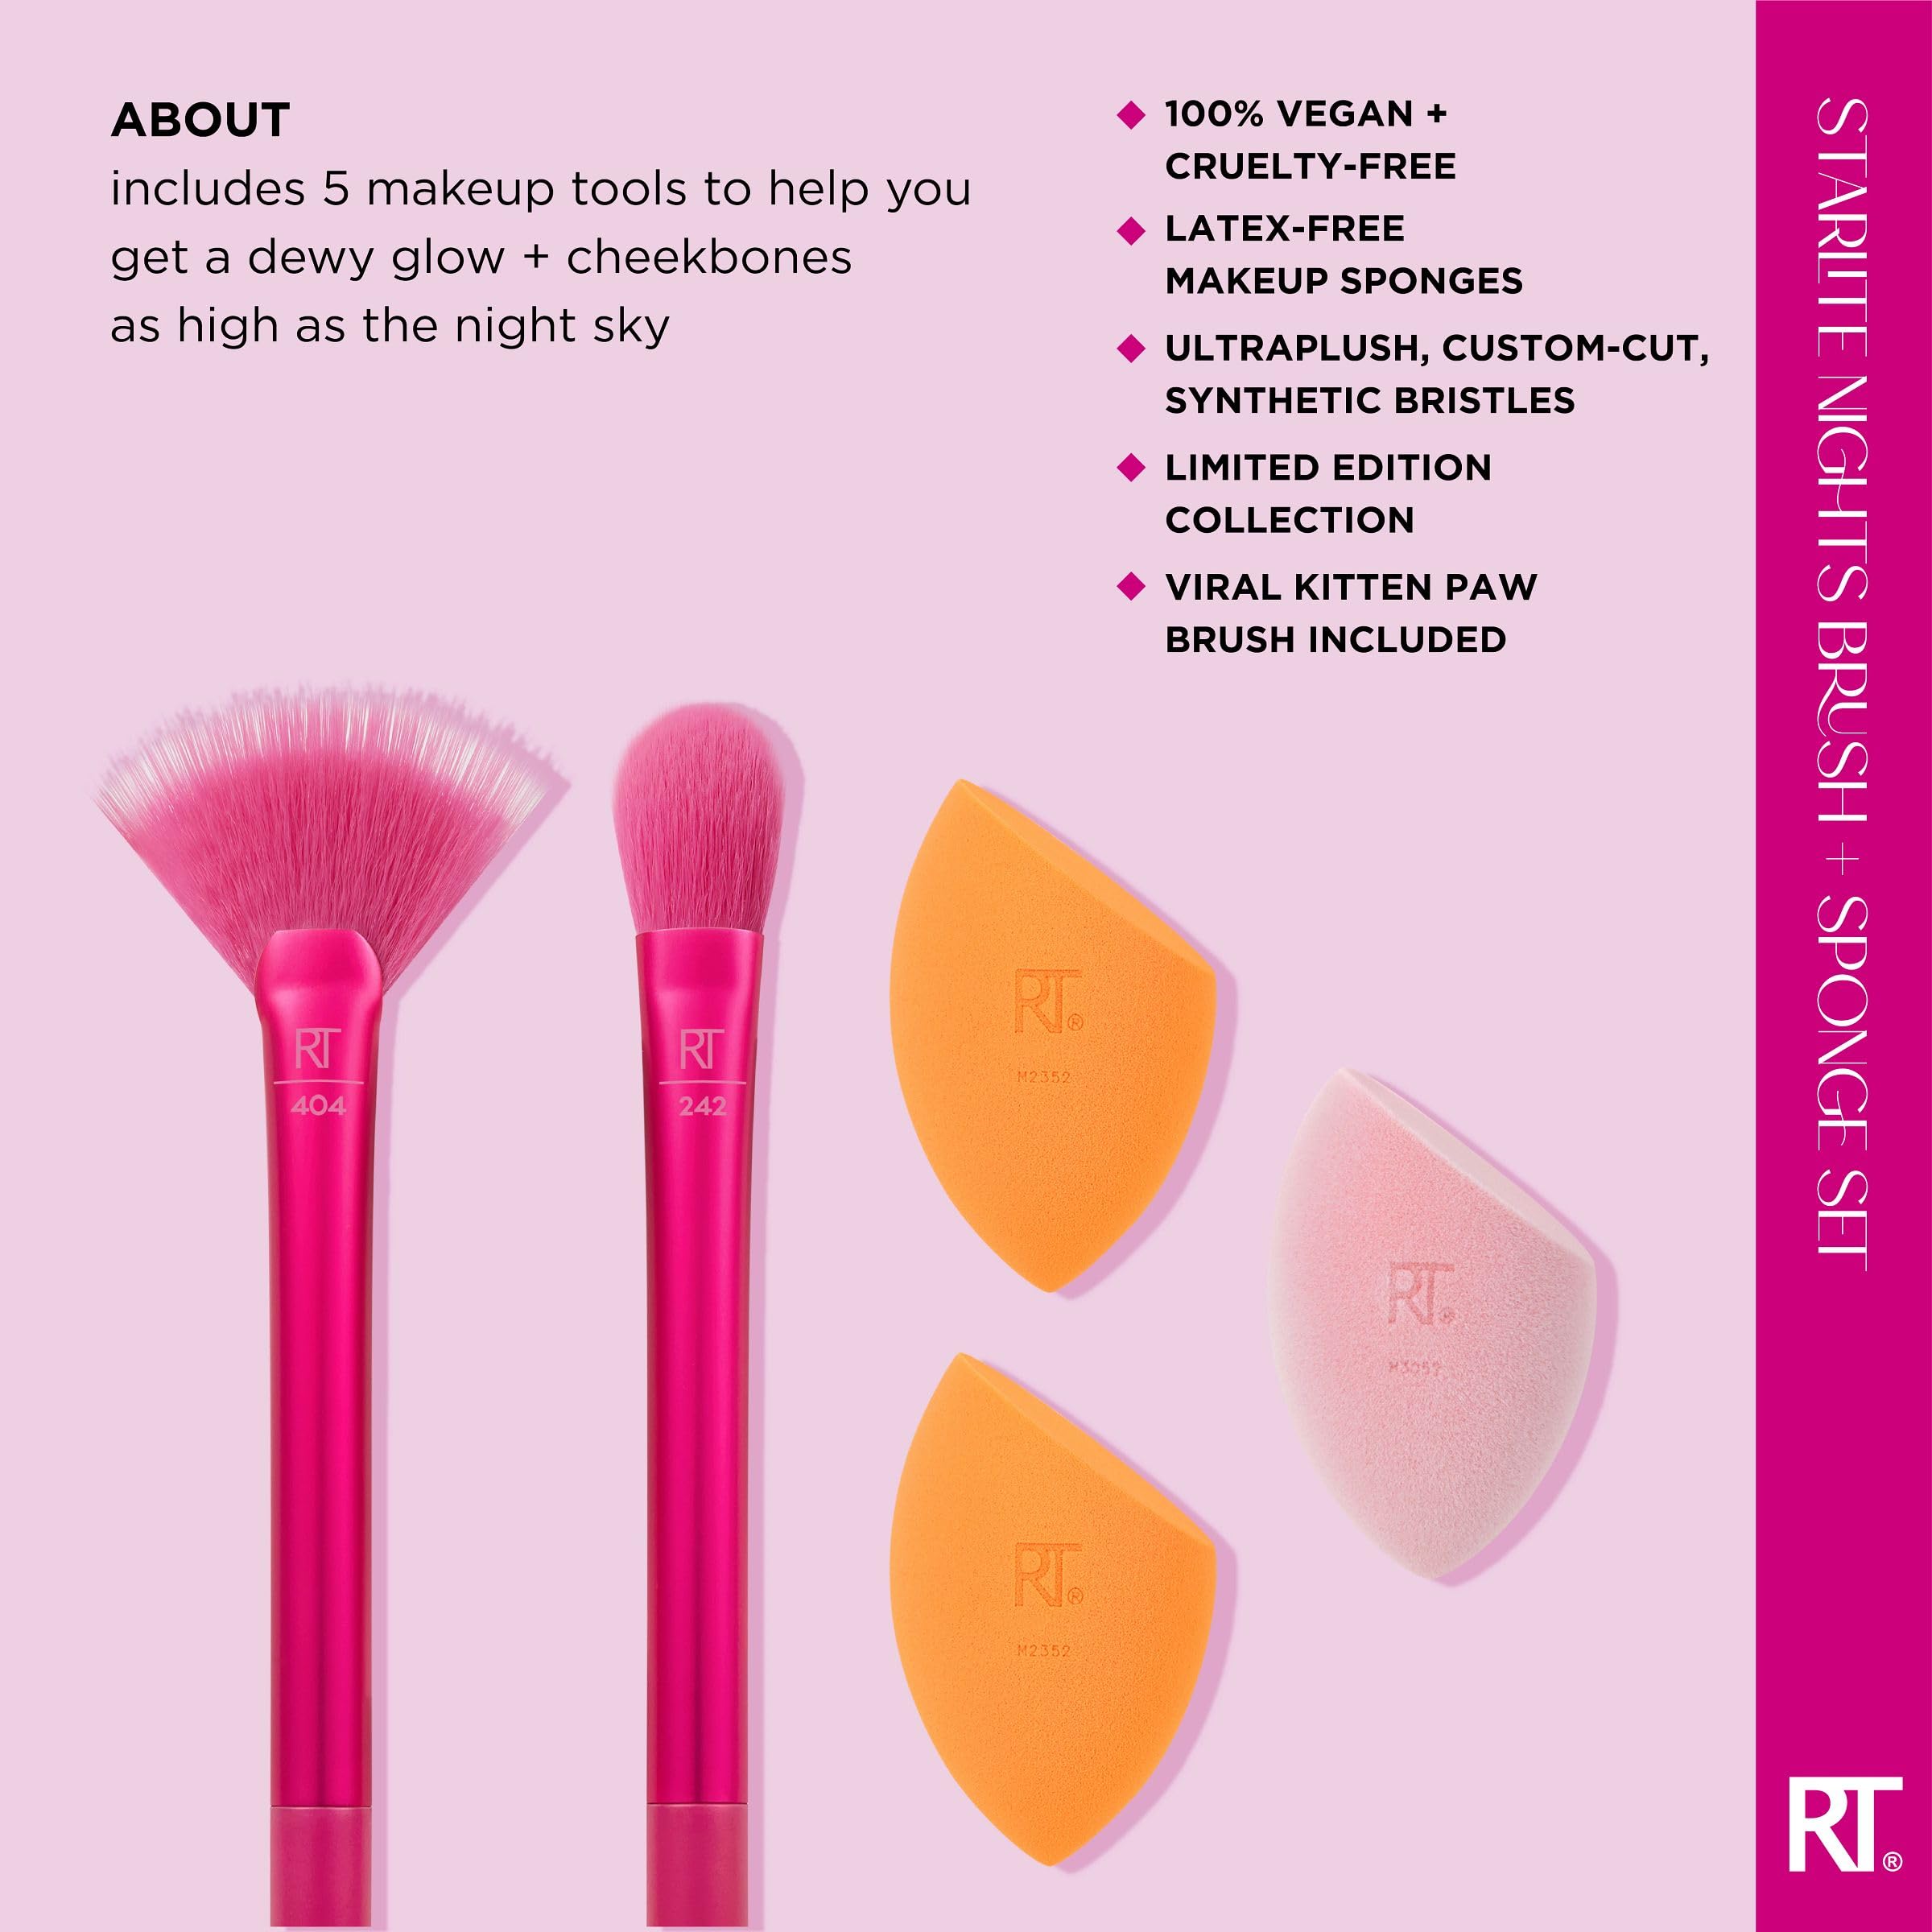 Real Techniques Limited Edition Starlite Nights Brush + Sponge Kit, Makeup Brush & Makeup Blending Sponge Set, For Concealer, Foundation, & Powder, For Matte or Dewy Skin, 5 Piece Gift Set